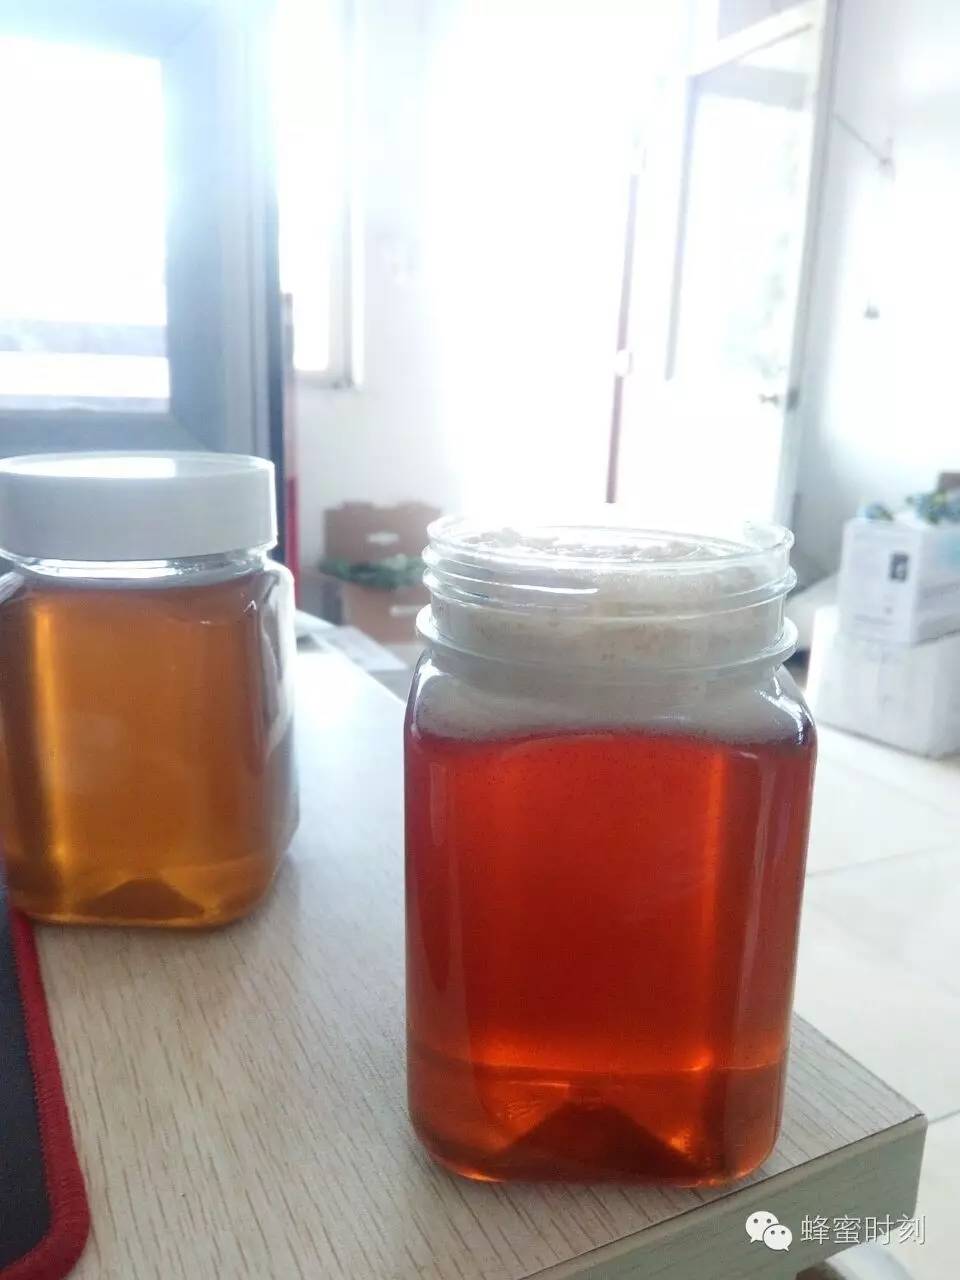 茶花粉 哪个牌子的蜂蜜好 纯蜂蜜的价格 蜂蜜水怎么喝 怎样鉴别蜂蜜